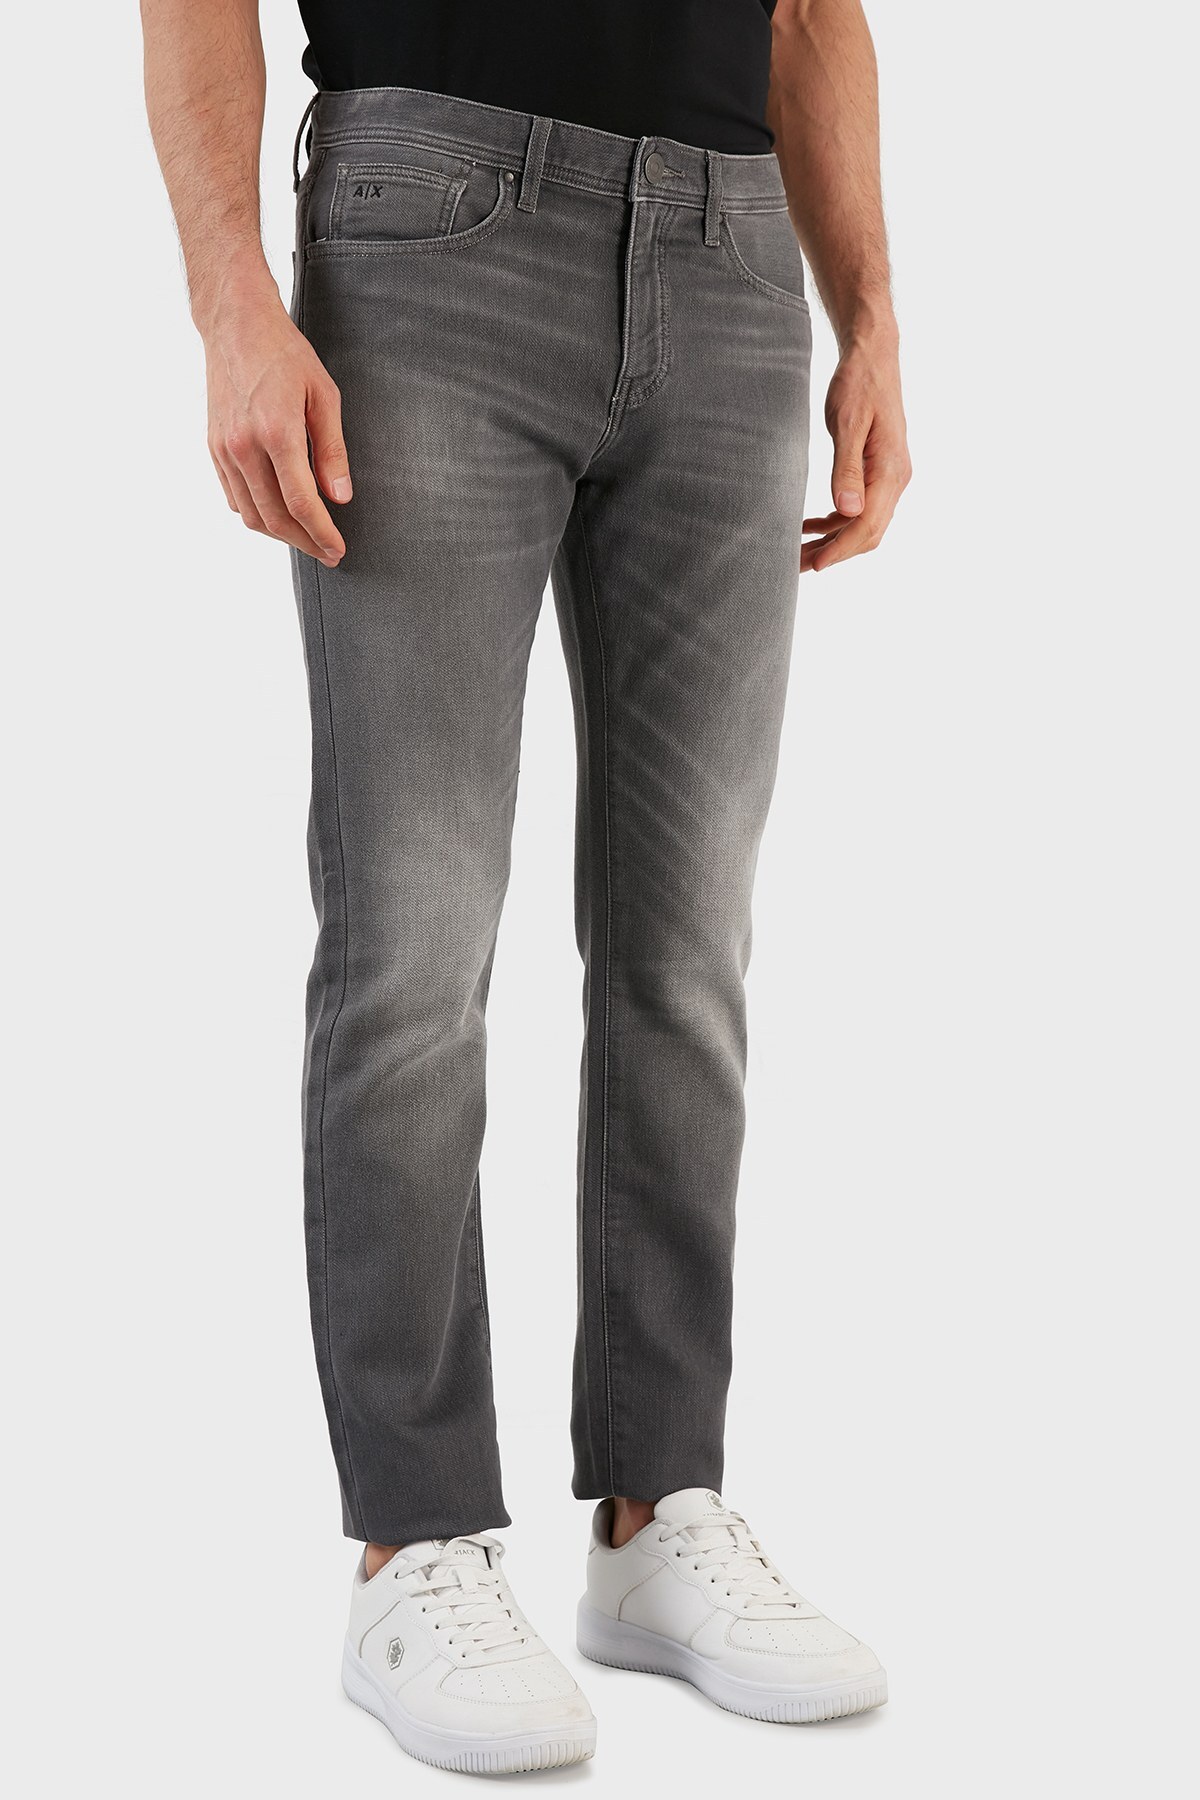 Armani Exchage Pamuklu Normal Bel Slim Fit J13 Jeans Erkek Kot Pantolon 6KZJ13 Z4P6Z 0903 GRİ